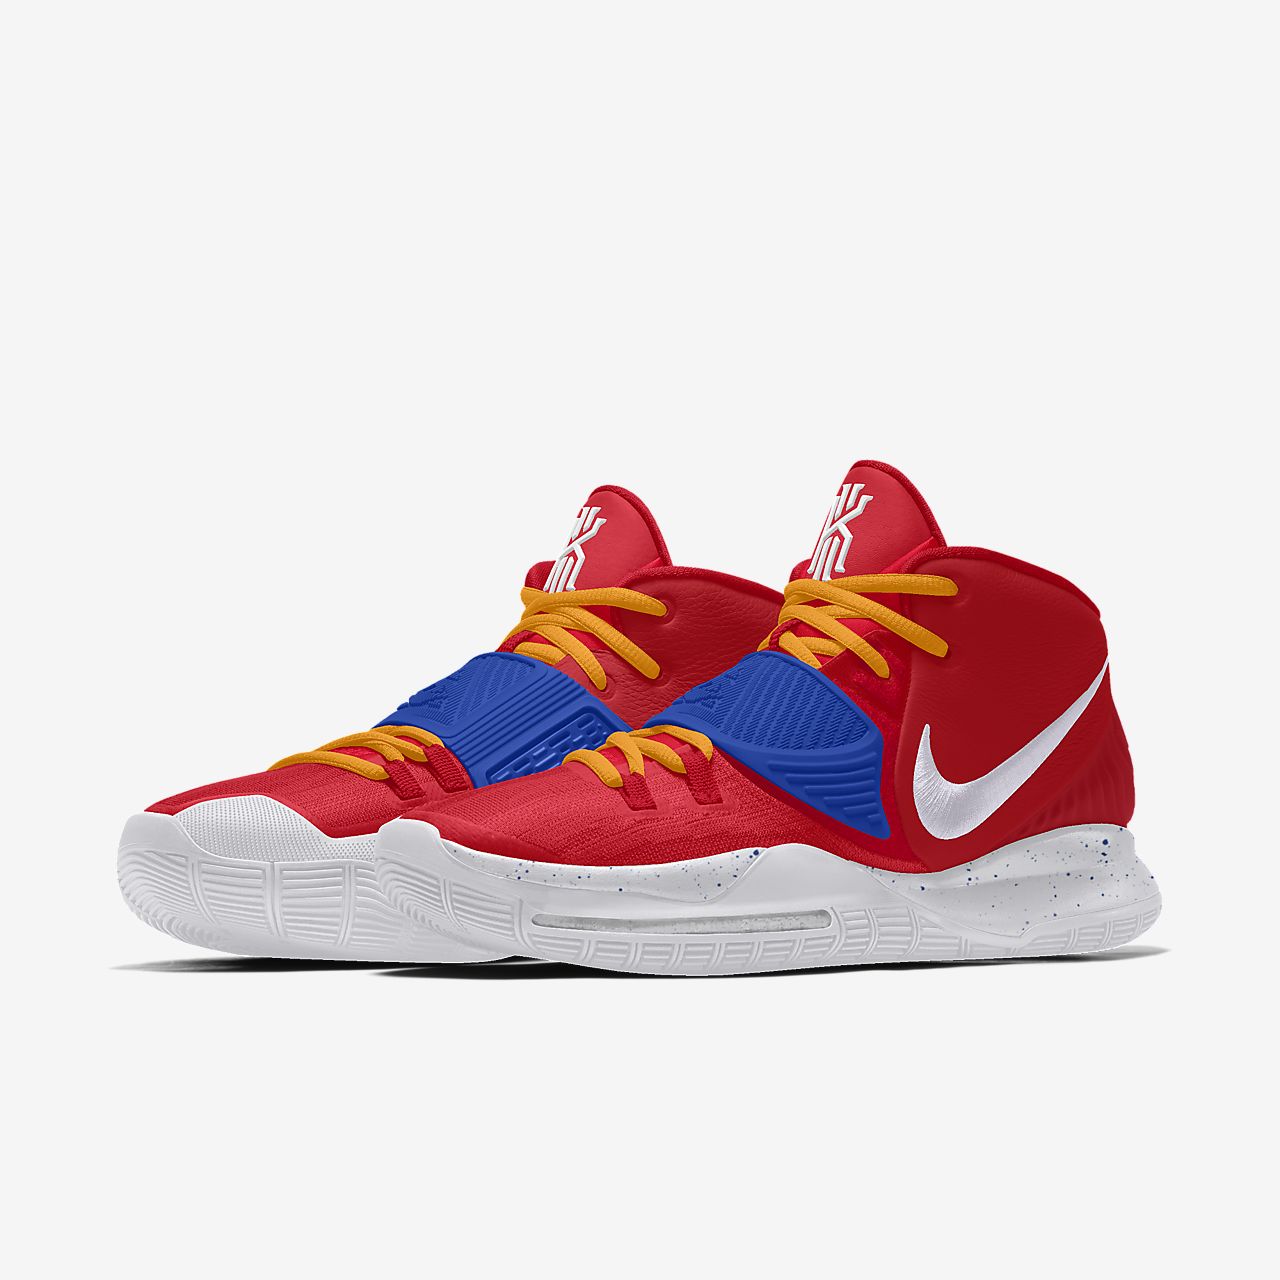 Custom Basketball Shoe.Online store 